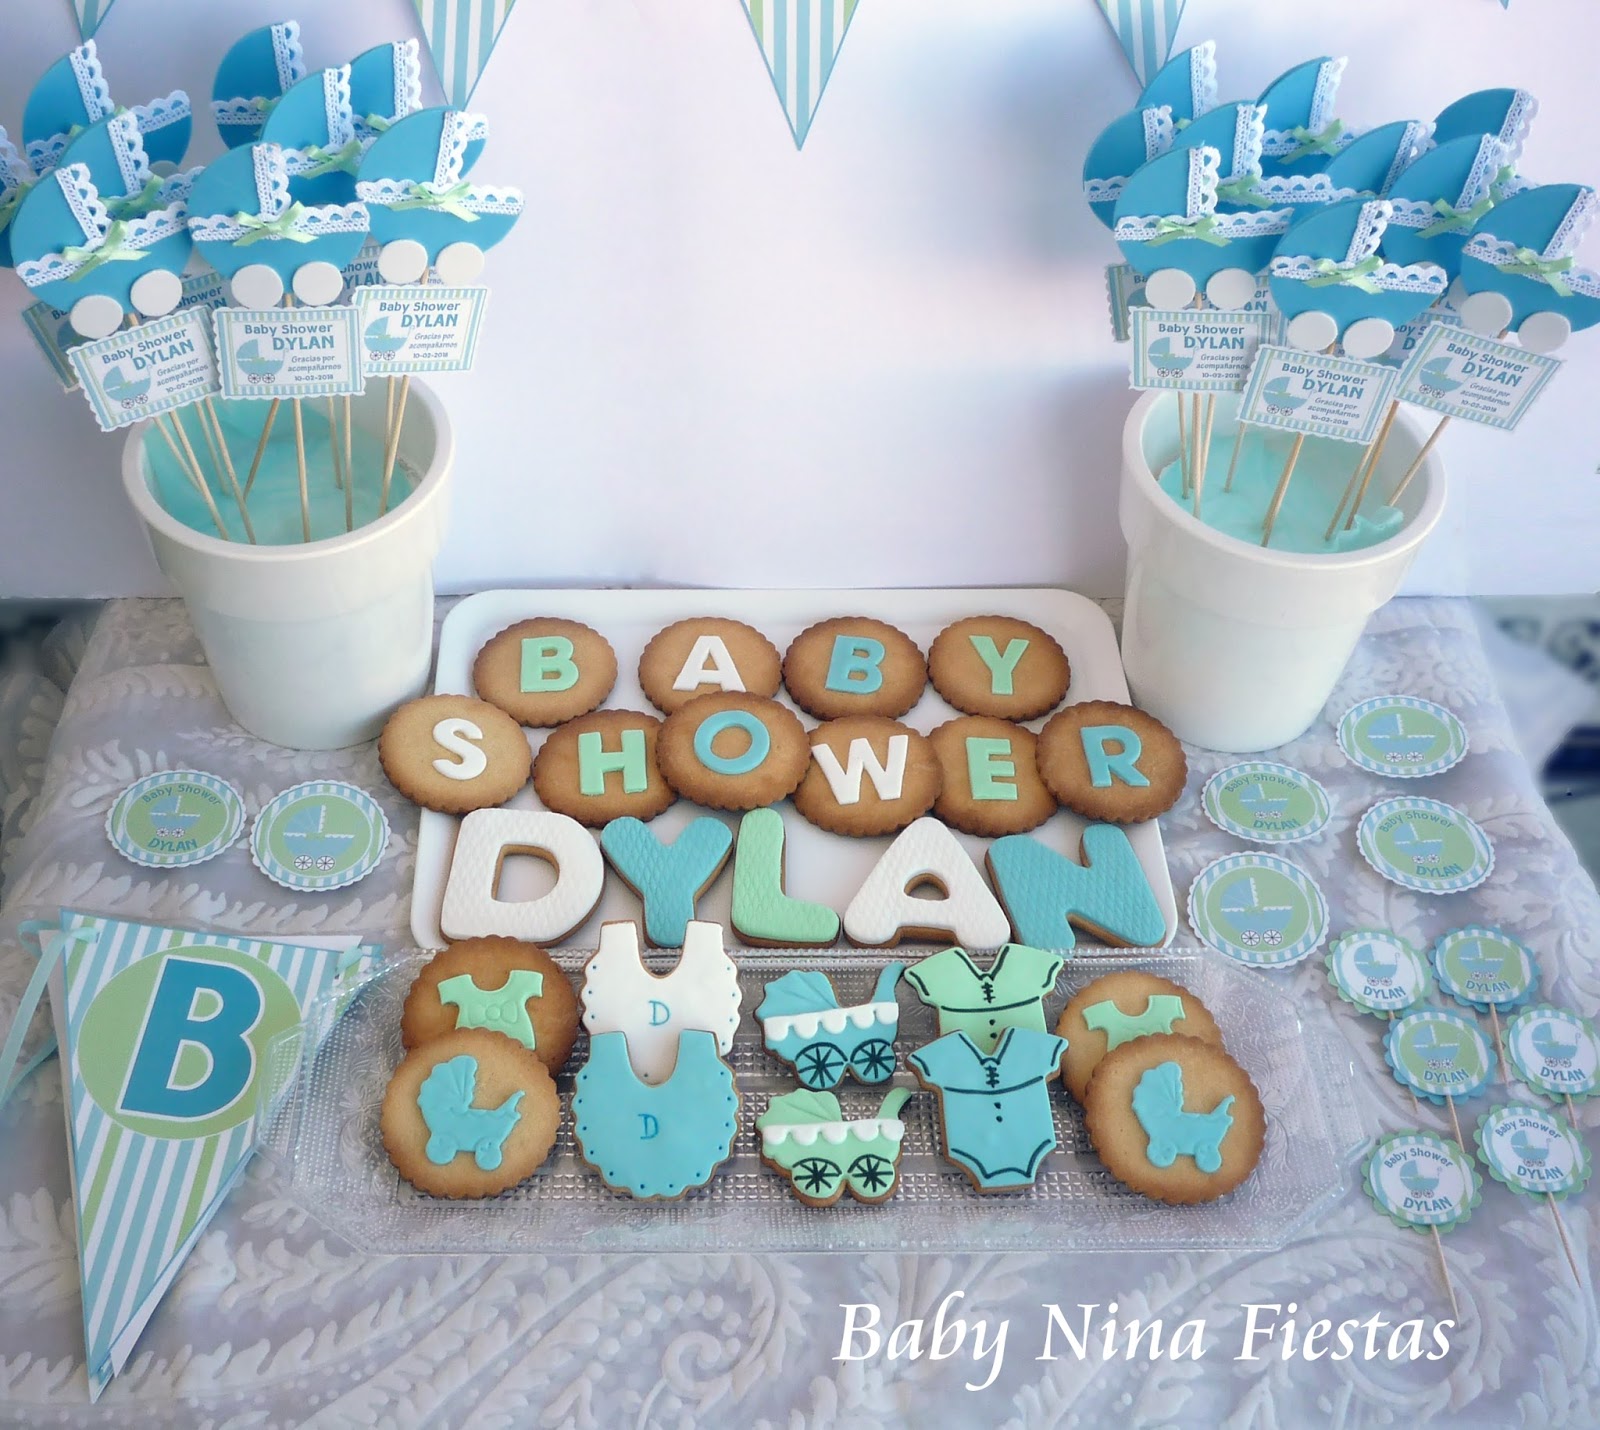 Baby Nina Fiestas Kit Personalizado Baby Shower Para Dylan